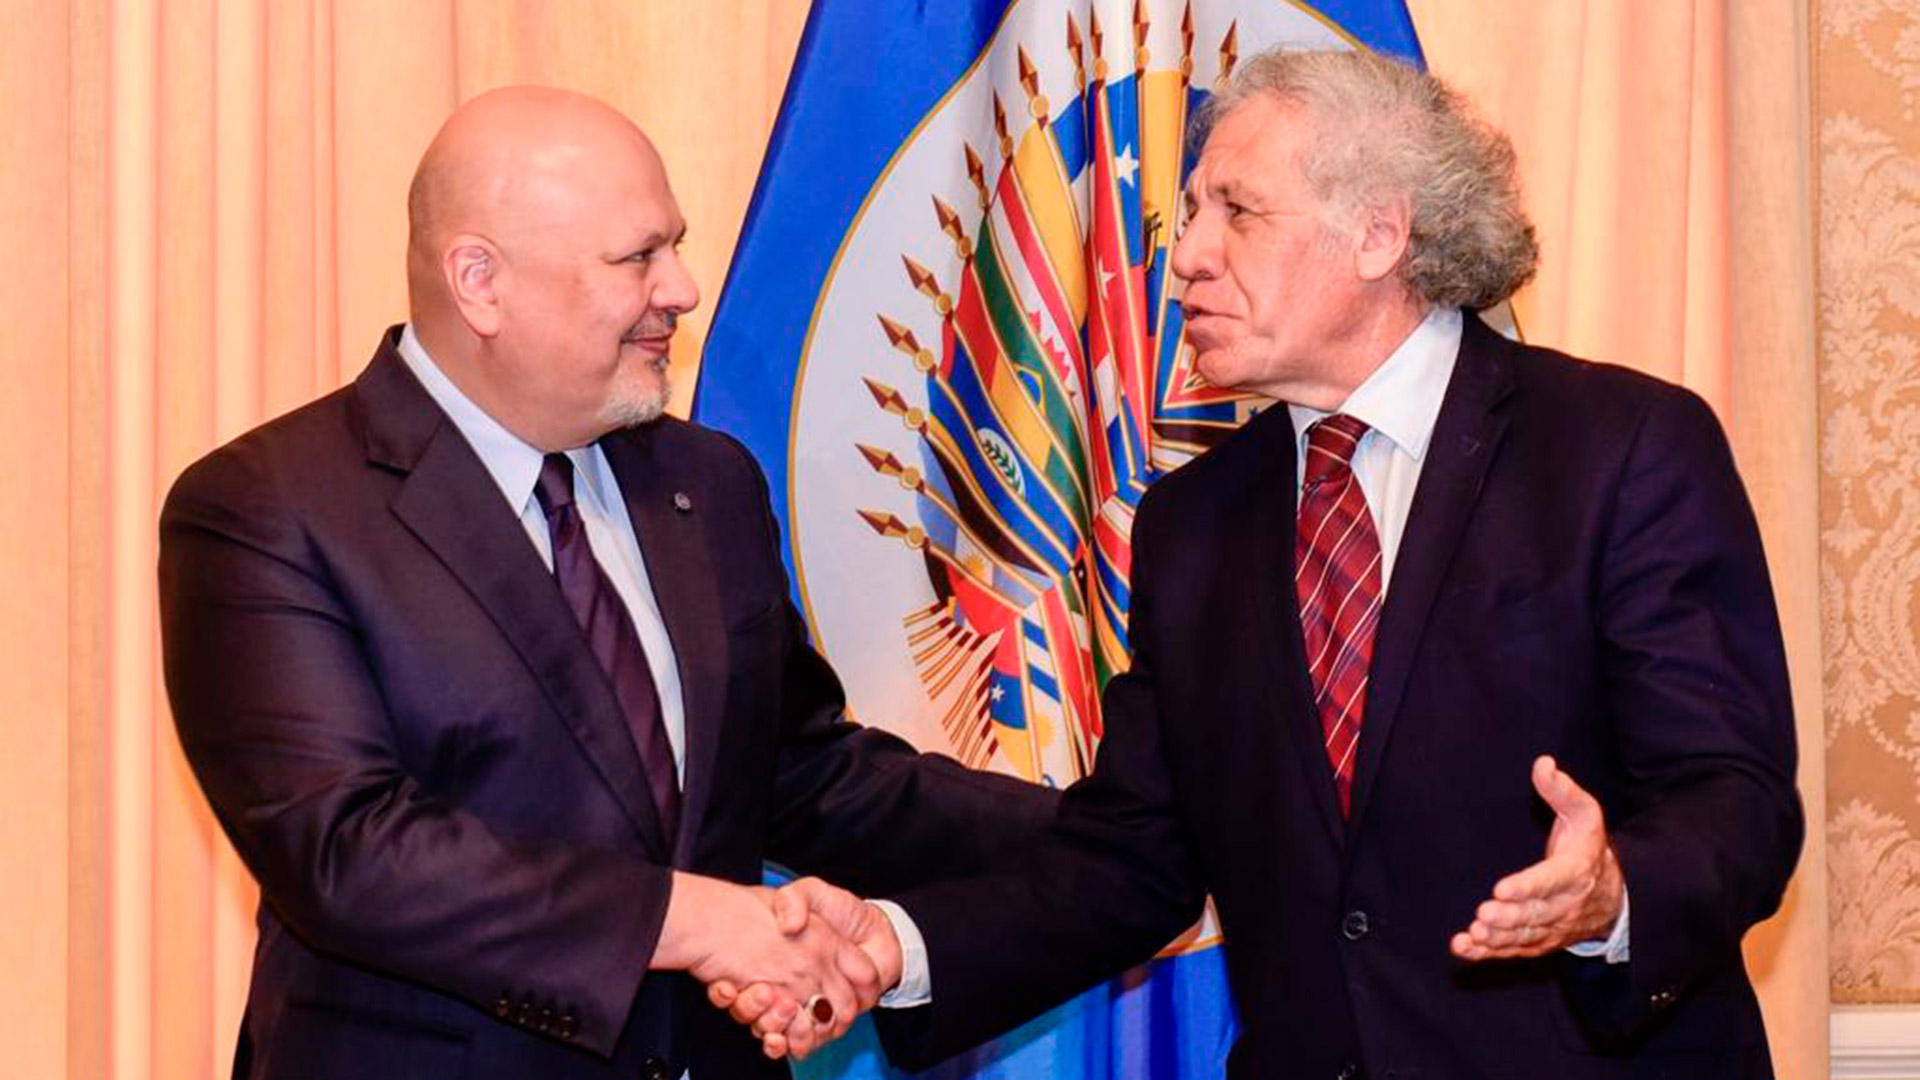 Luis Almagro recibió al fiscal de la Corte Penal Internacional para dialogar sobre iniciativas de cooperación entre la OEA y el organismo